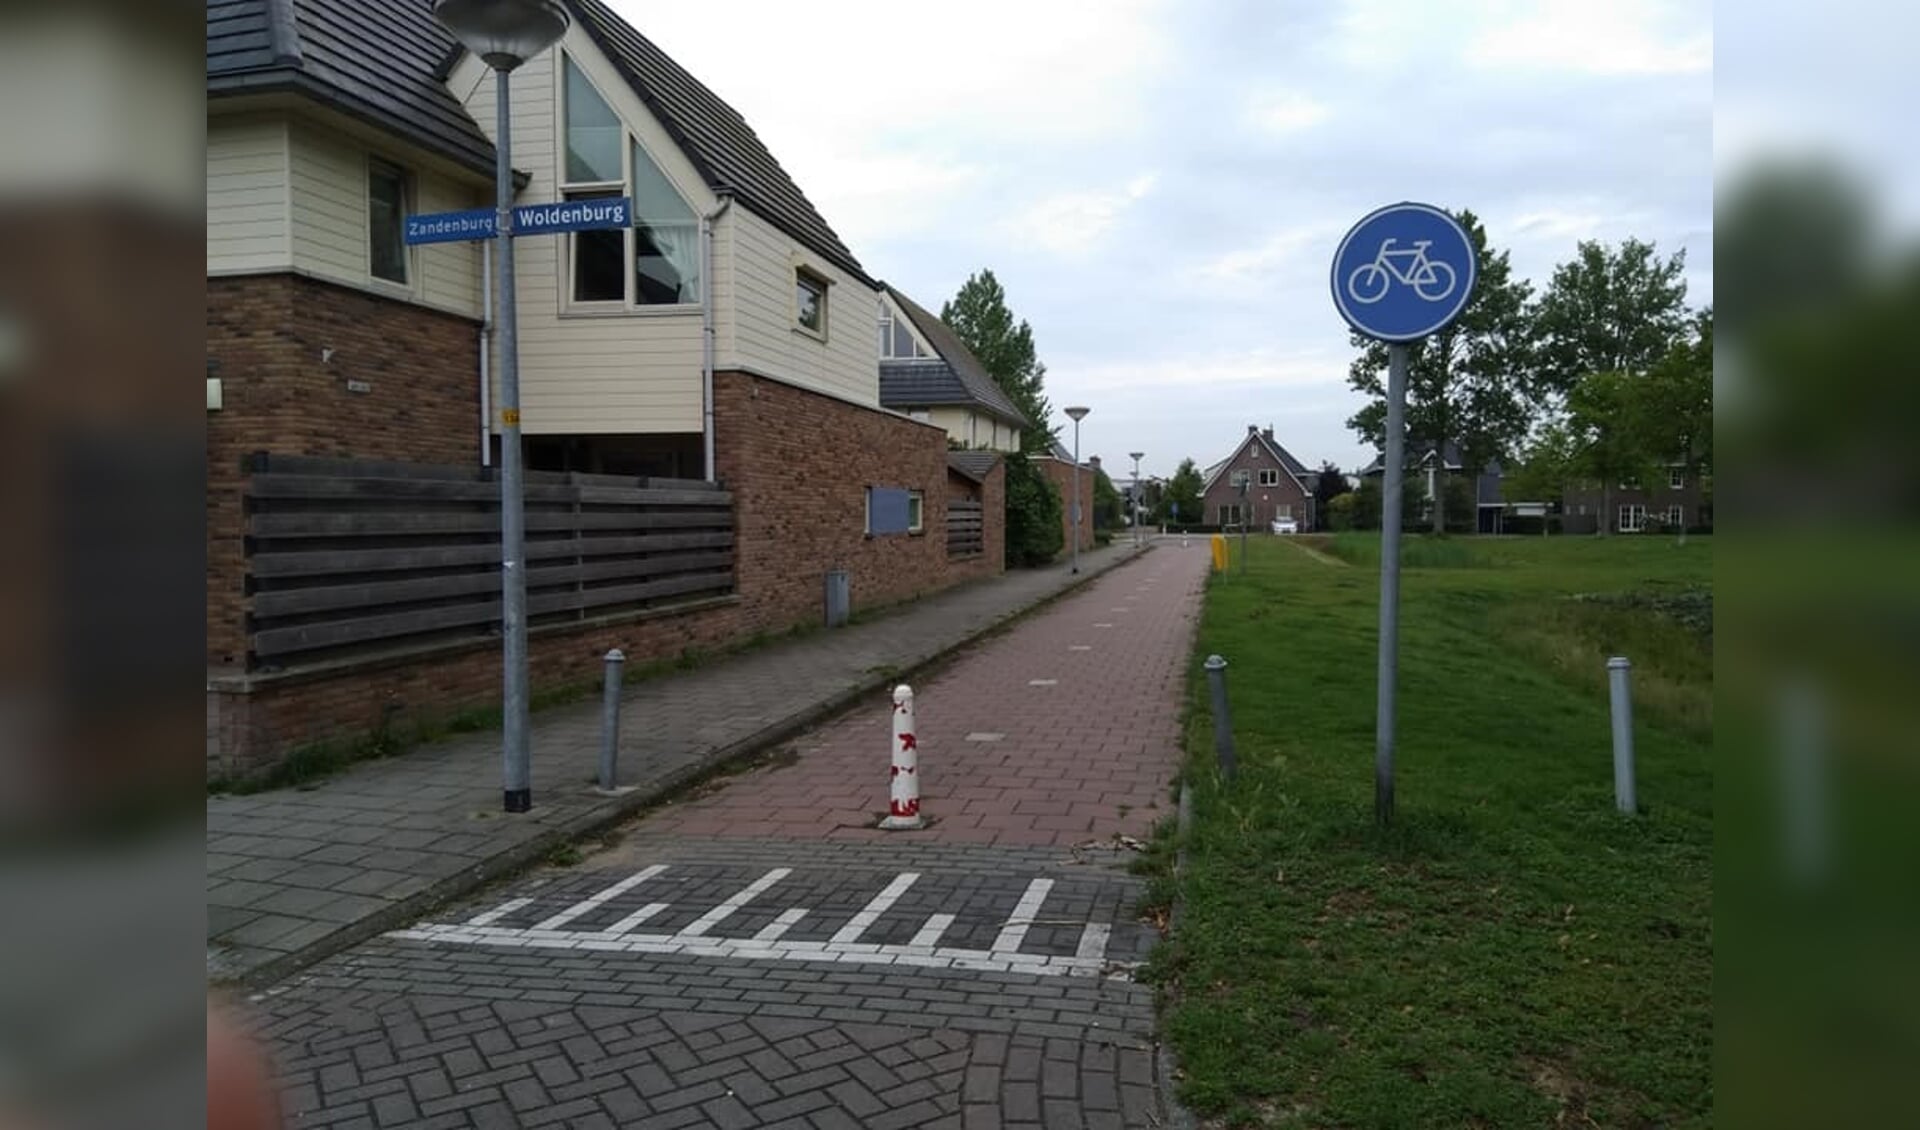 Het fietspad Woldenburg waar bromfietsers graag gebruik van maken, omdat deze route voor hen sneller is. 